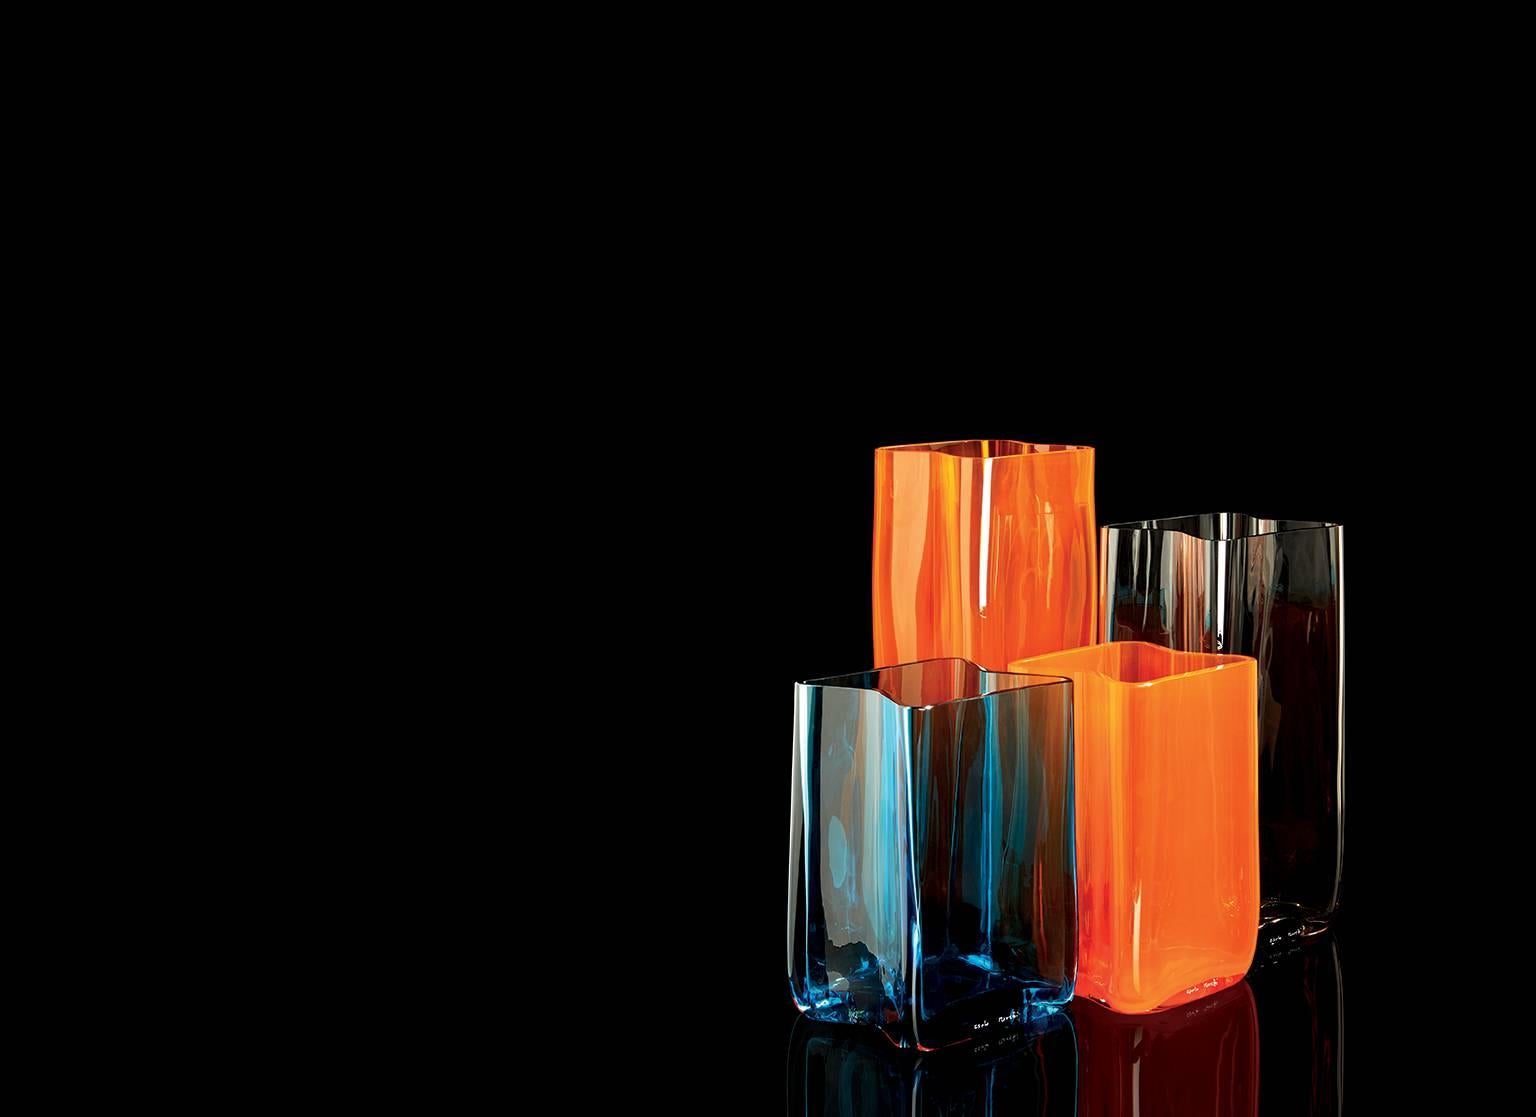 Vase contemporain Carlo Moretti Bosco en verre de Murano soufflé à la bouche, de couleur orange.

Le Bosco peut être combiné avec d'autres vases Bosco, de tailles et de couleurs différentes, de manière